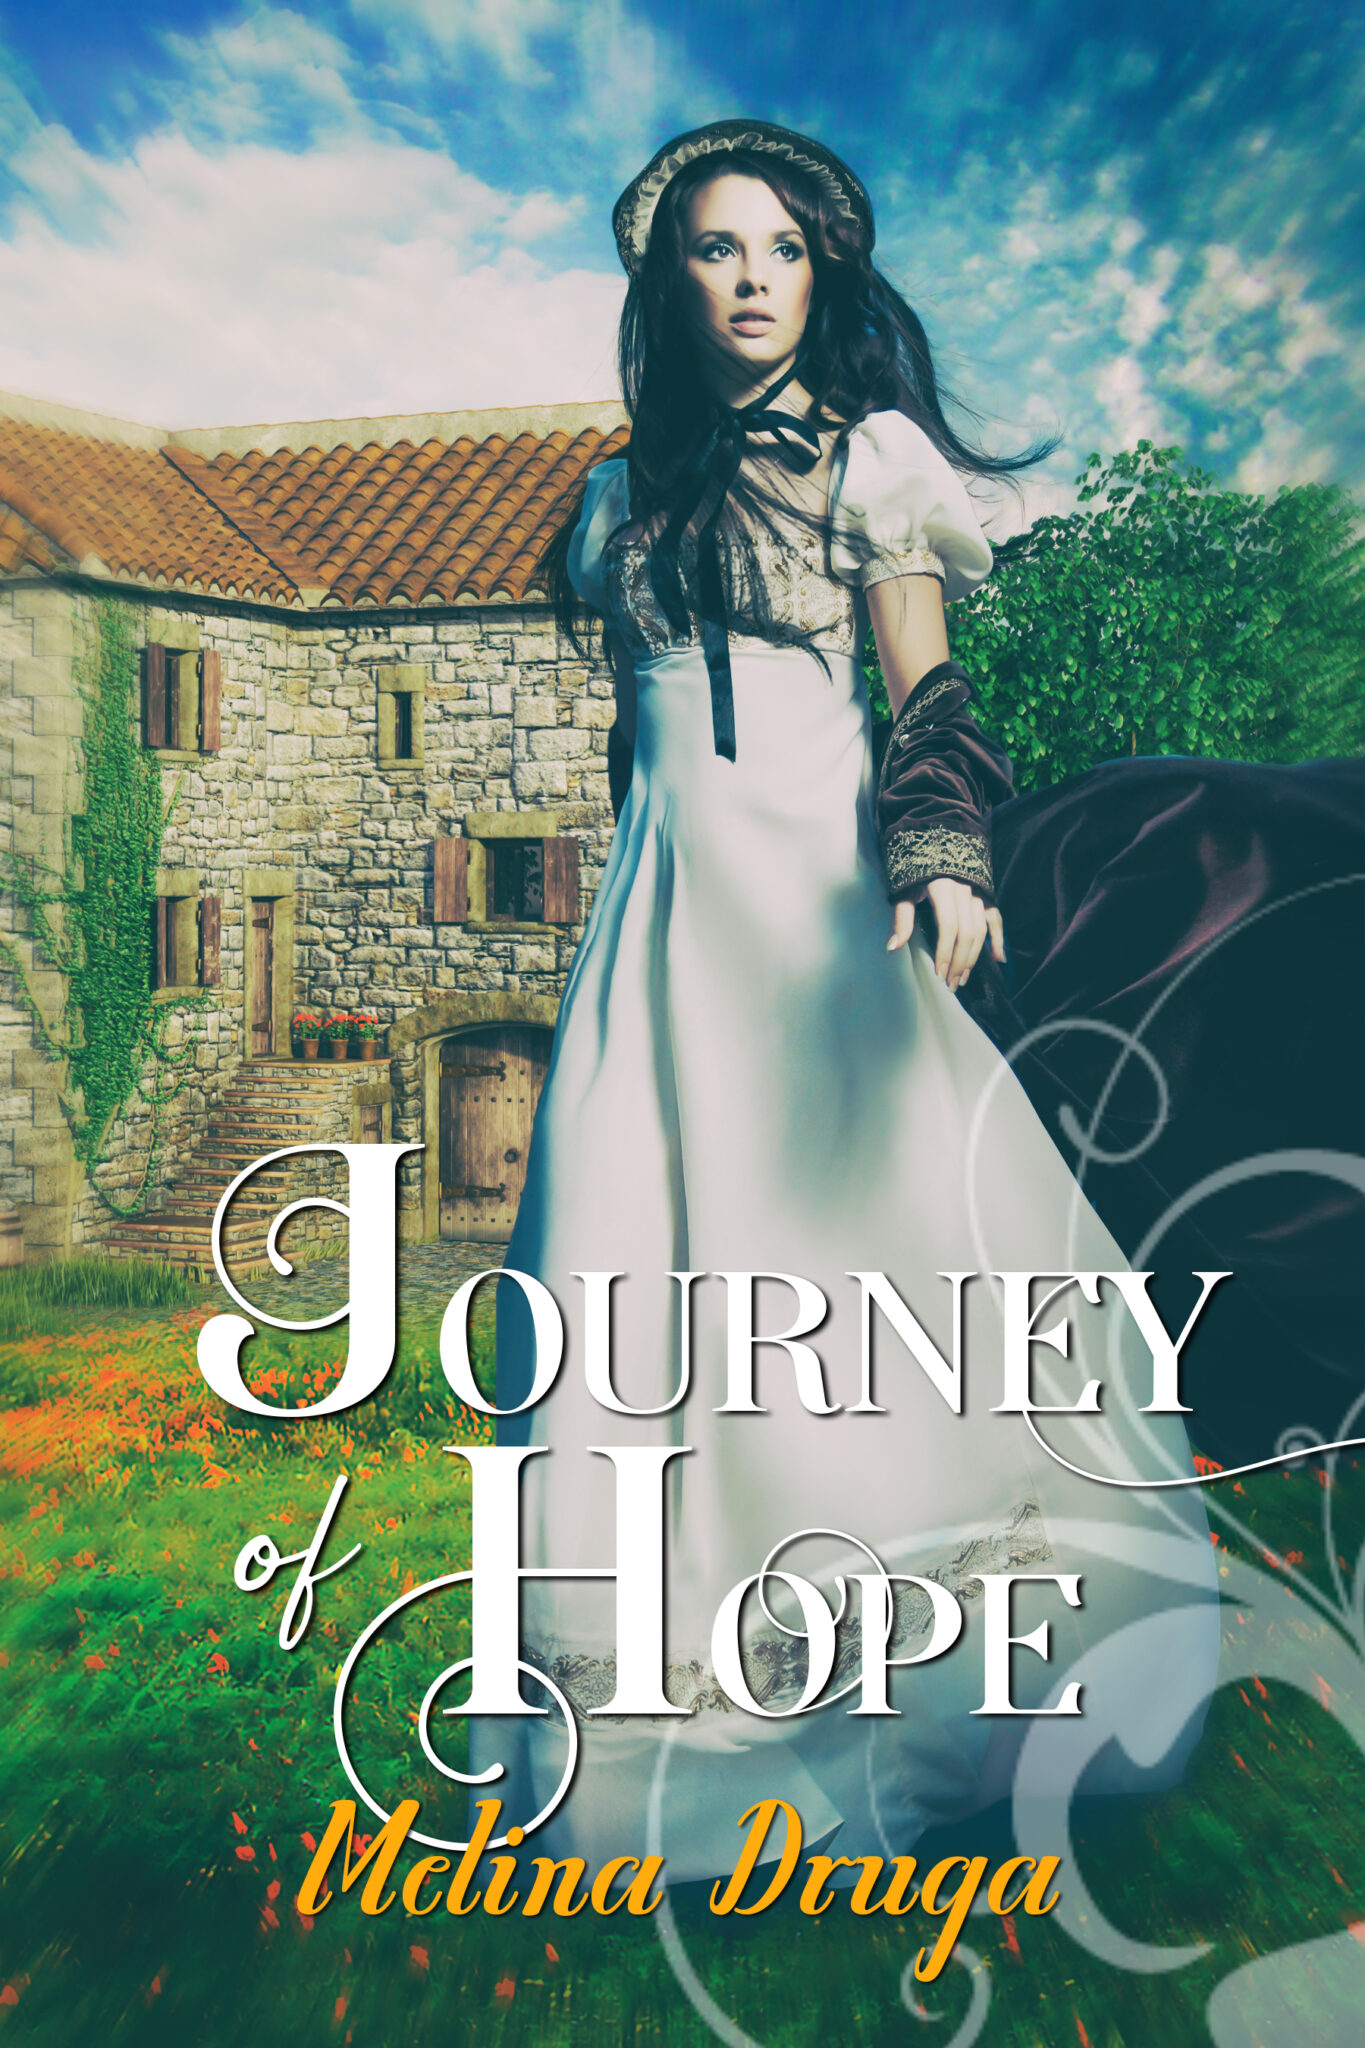 Journey of Hope by Melina Druga